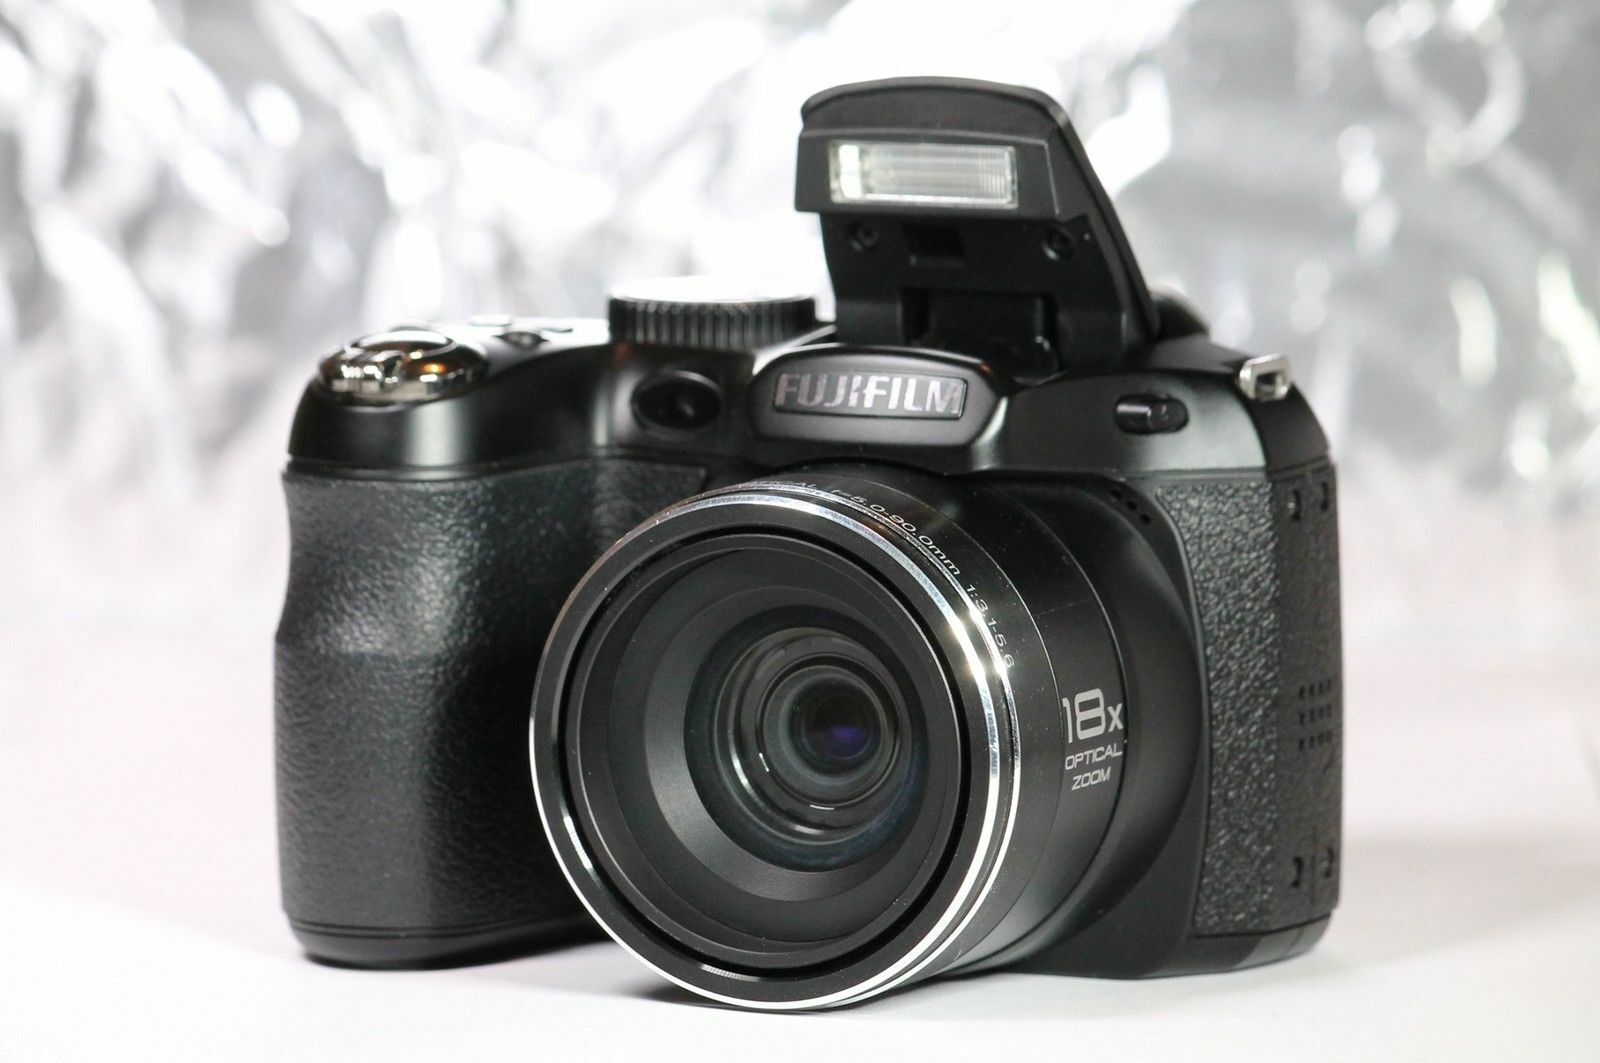 Infrared 850nm Converted Fujifilm S2980 14.0MP Digital Camera Uitverkoop, populaire uitverkoop